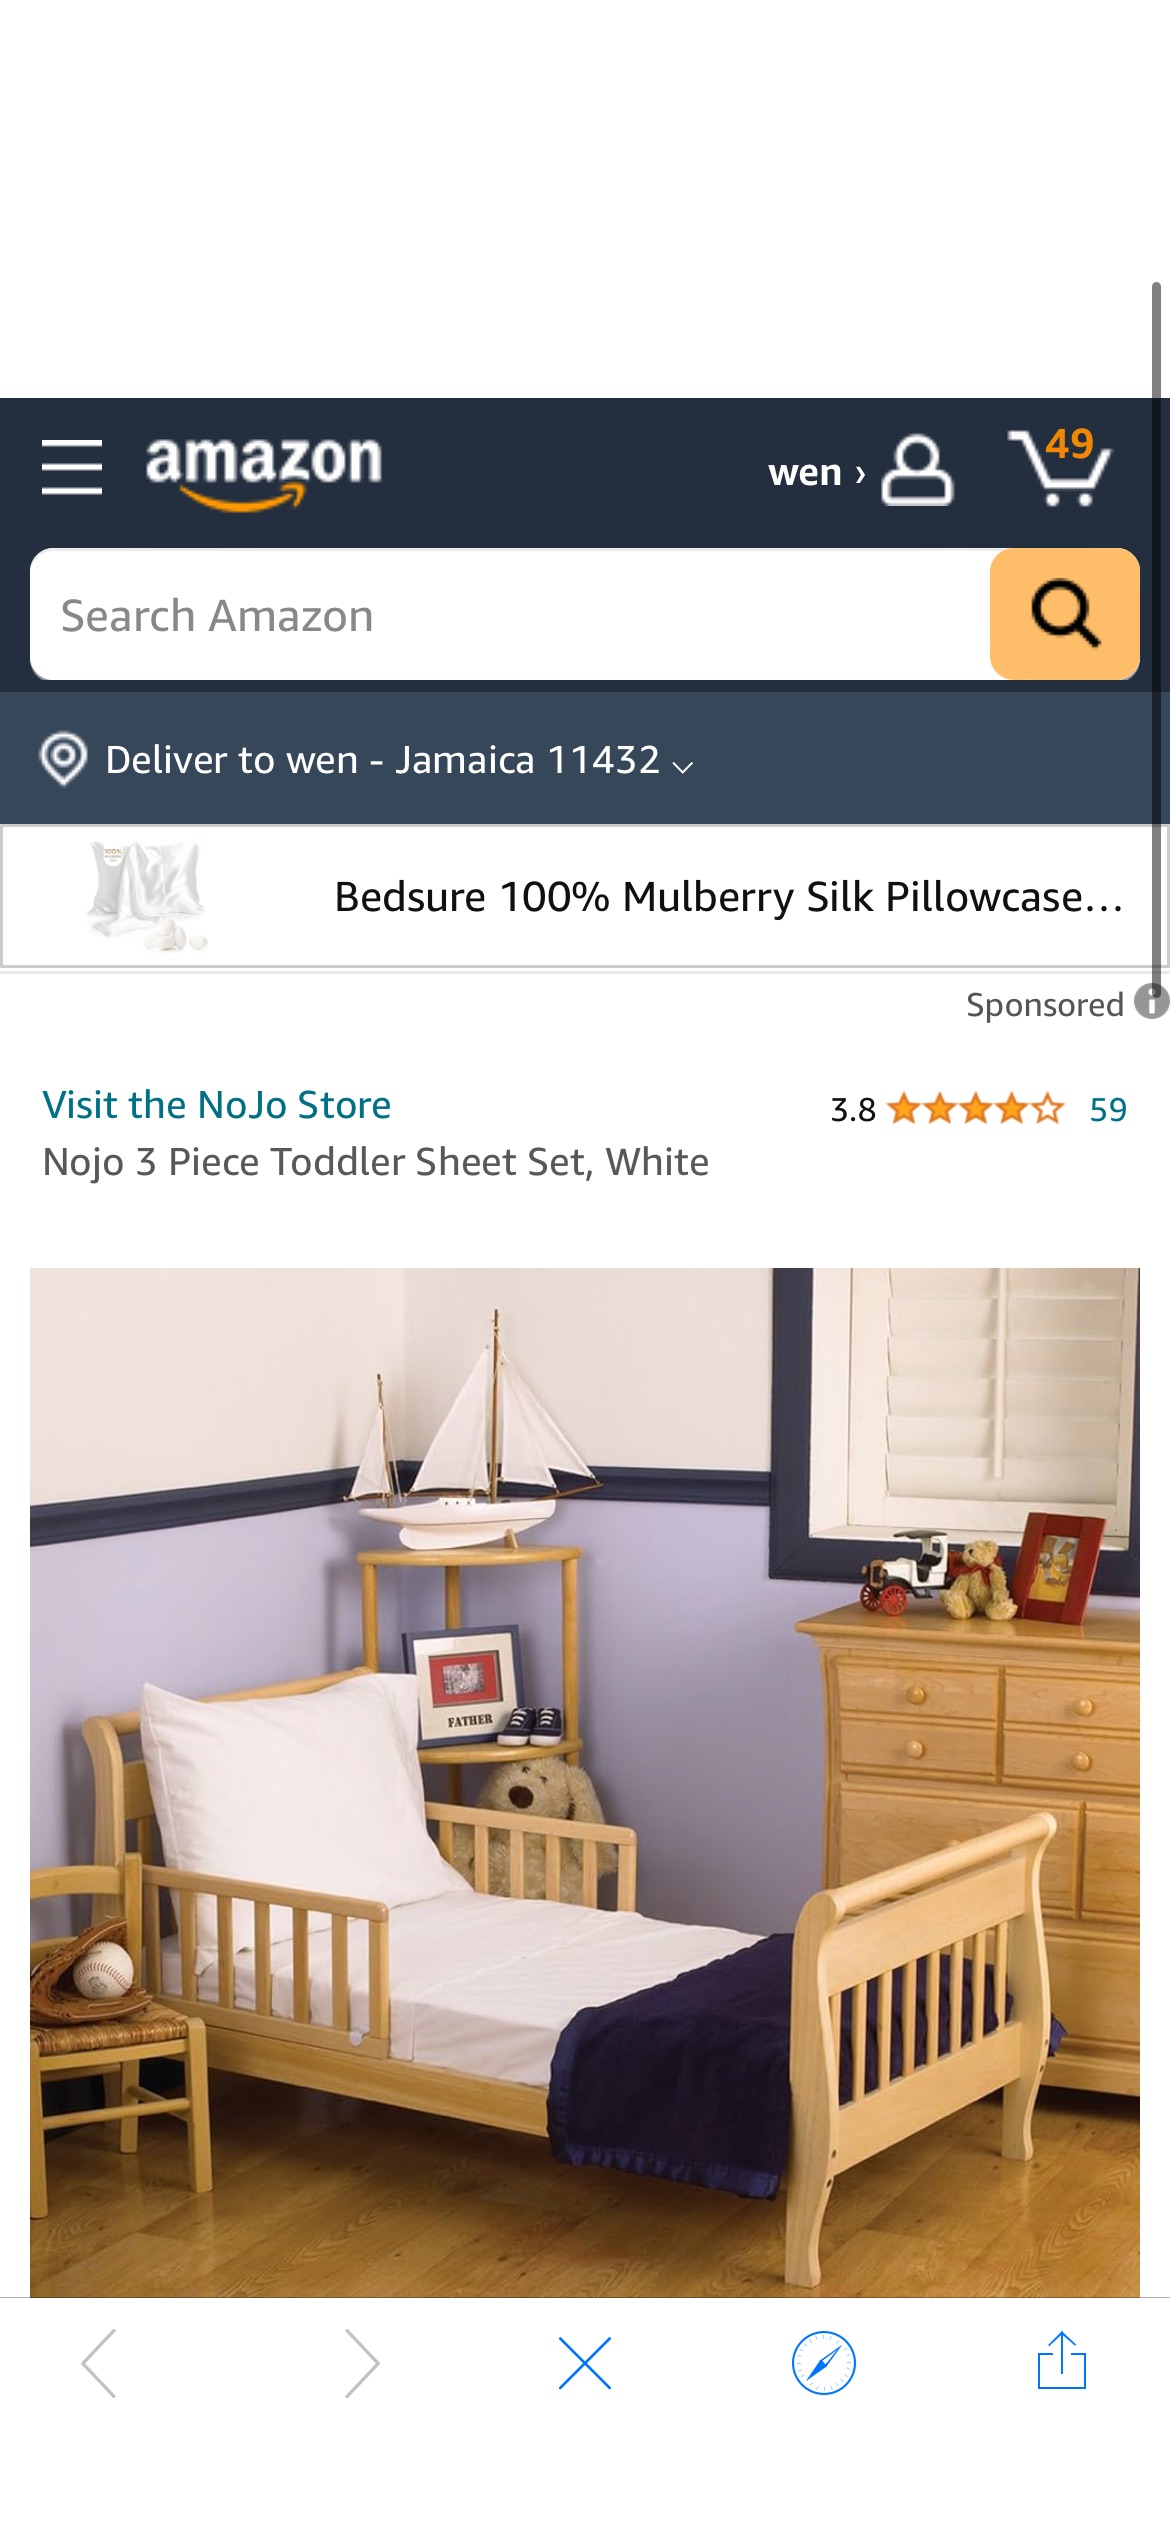 Amazon.com: Nojo 3 Piece Toddler Sheet Set, White : Home & Kitchen